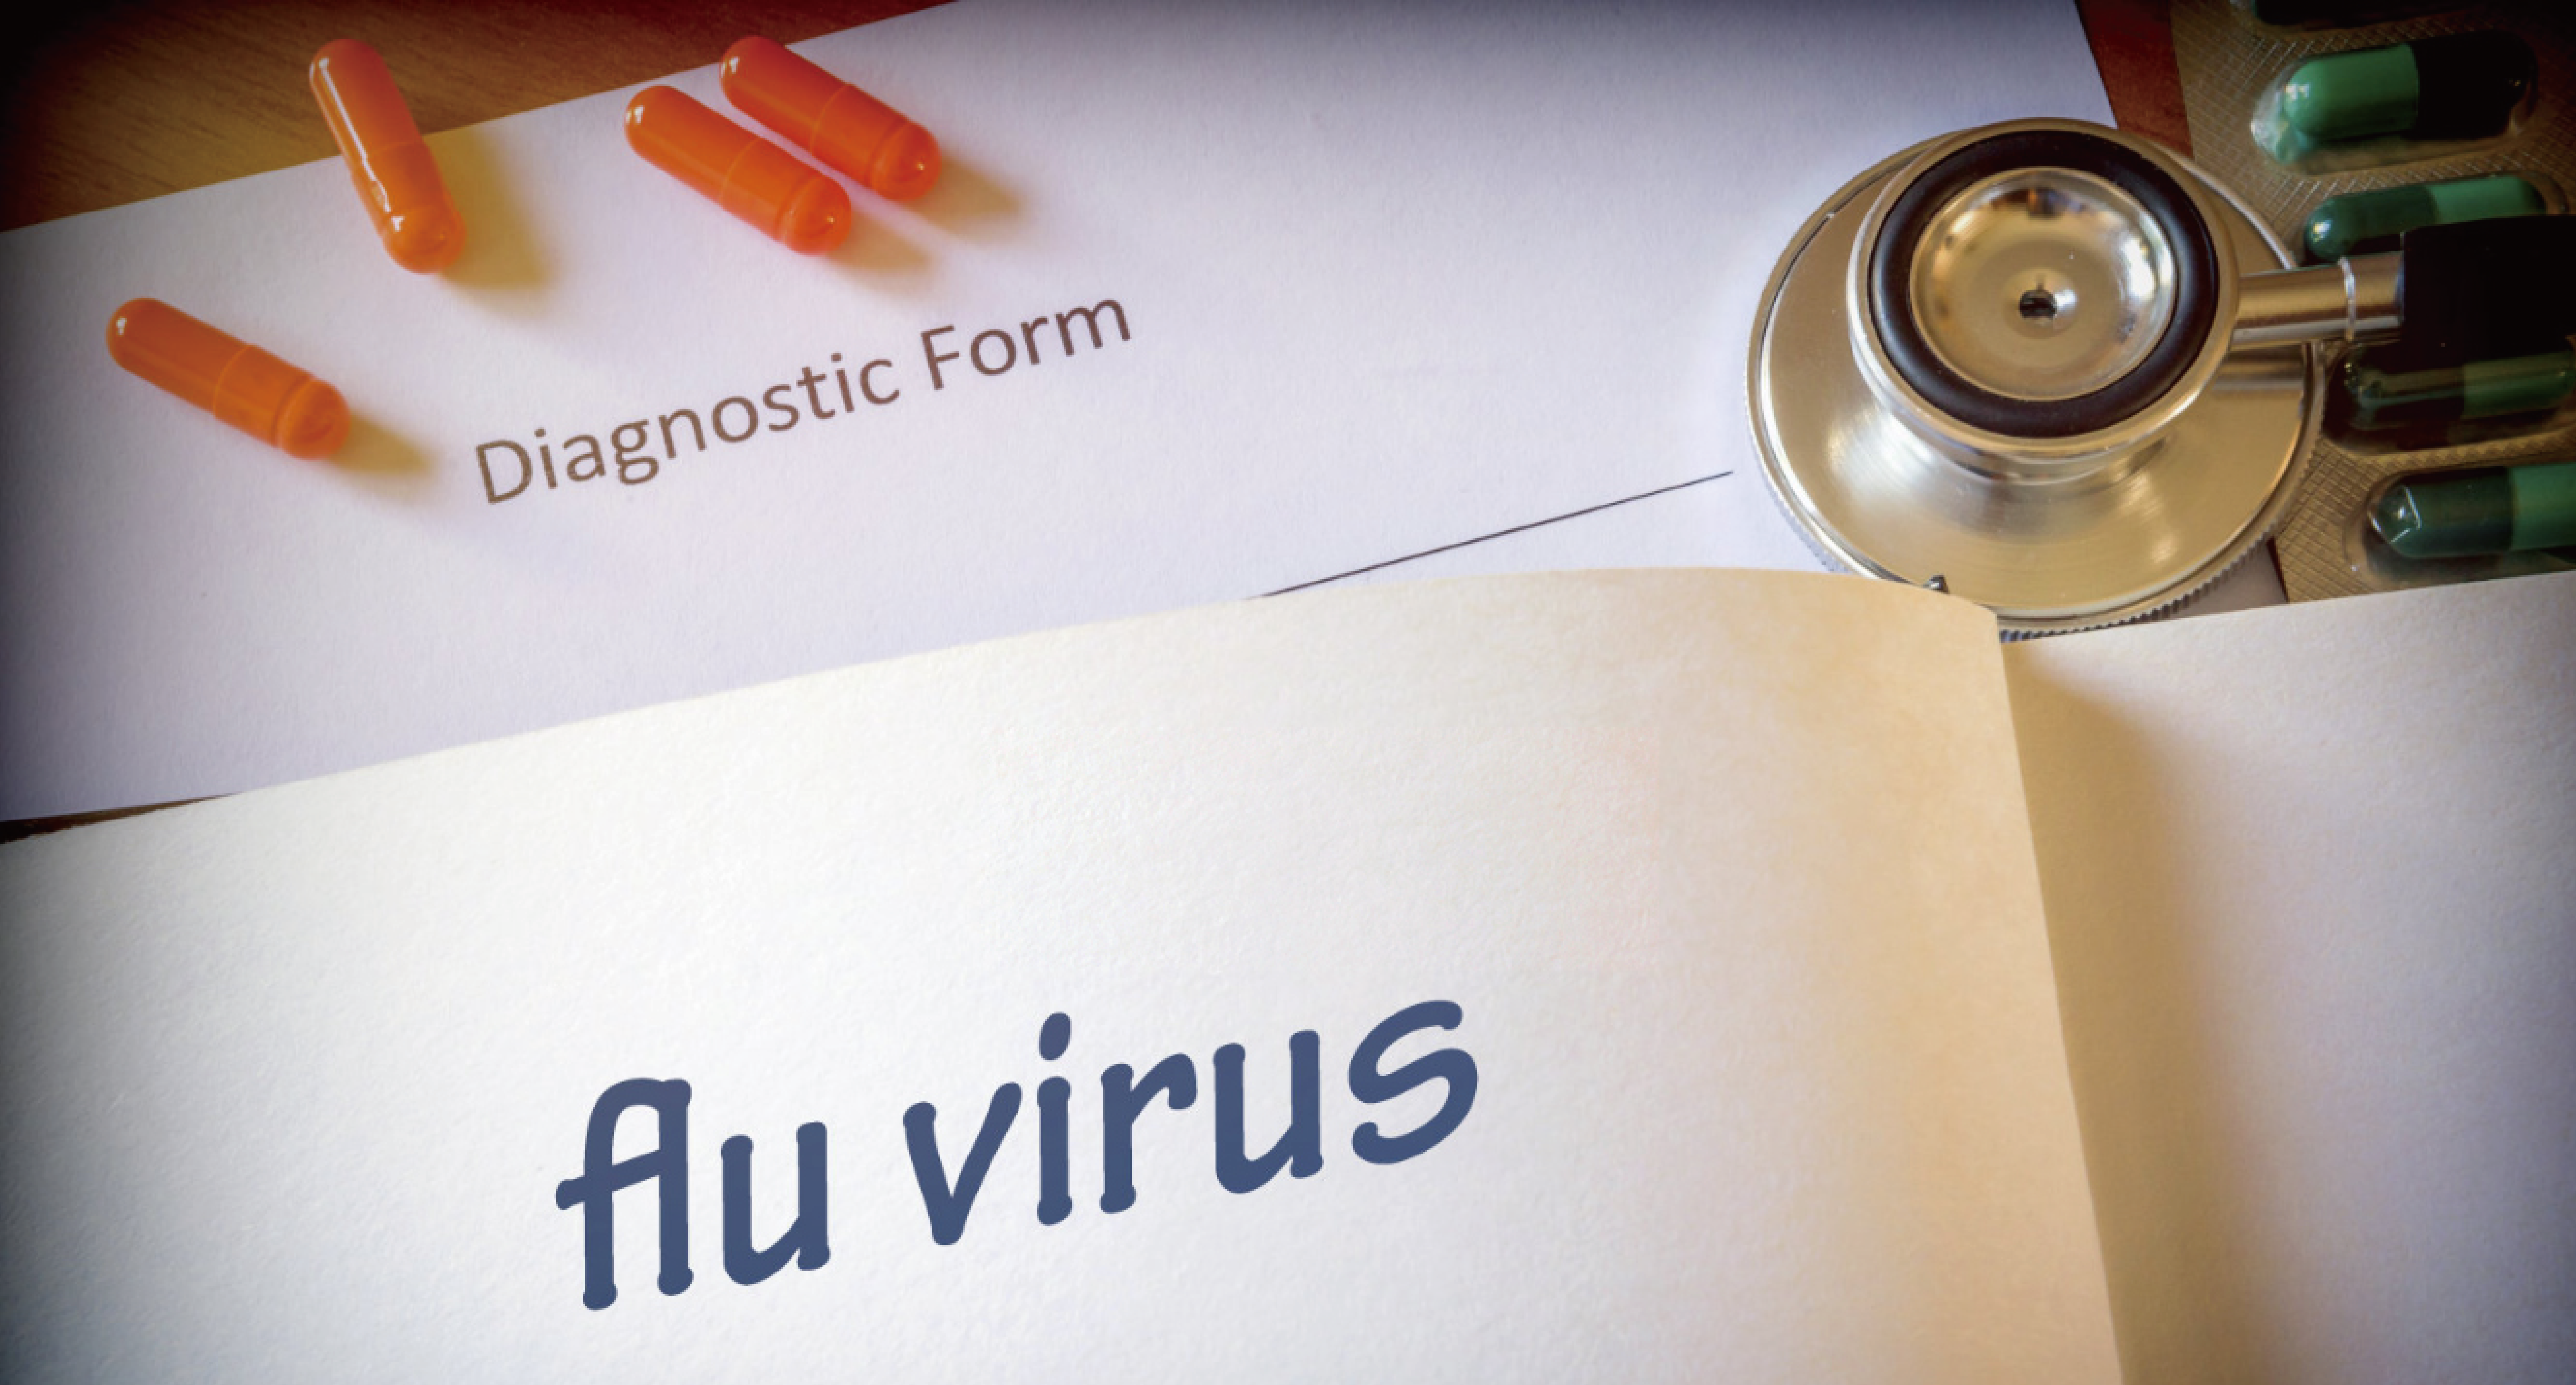 乙型流感和甲型流感有什么区别？乙型流感比甲型流感更严重吗？